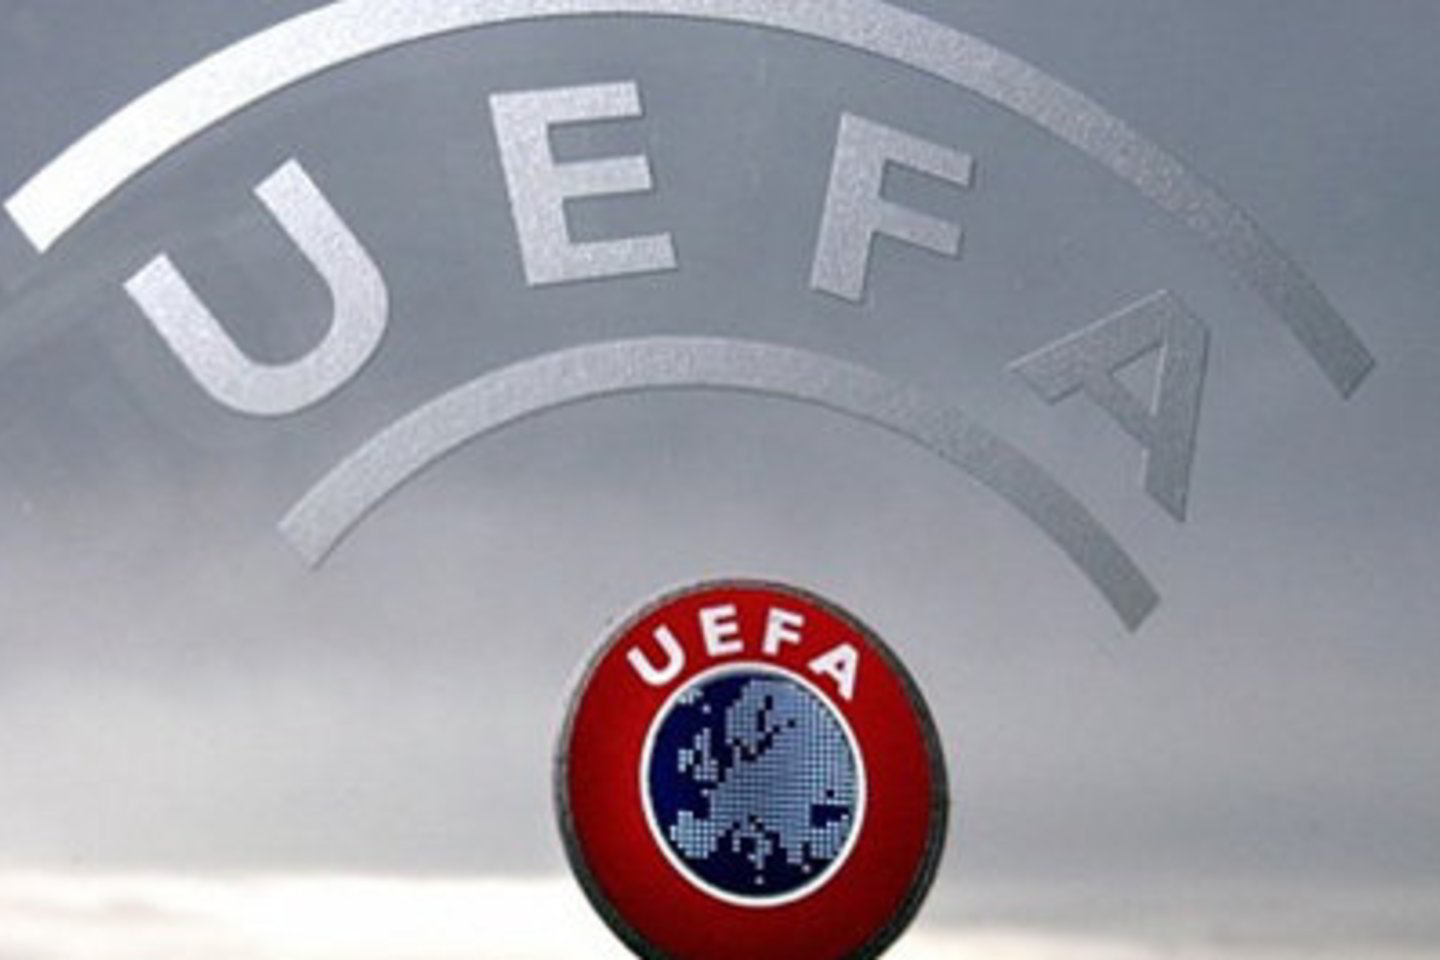 Europos futbolo asociacijų sąjungos (UEFA) reikalavimus atitinkančios licencijos po apeliacijų išduotos dar trims klubams - Panevėžio „Ekranui“, Pakruojo „Kruojai“ ir Gargždų „Bangai“.<br>fkekranas.lt